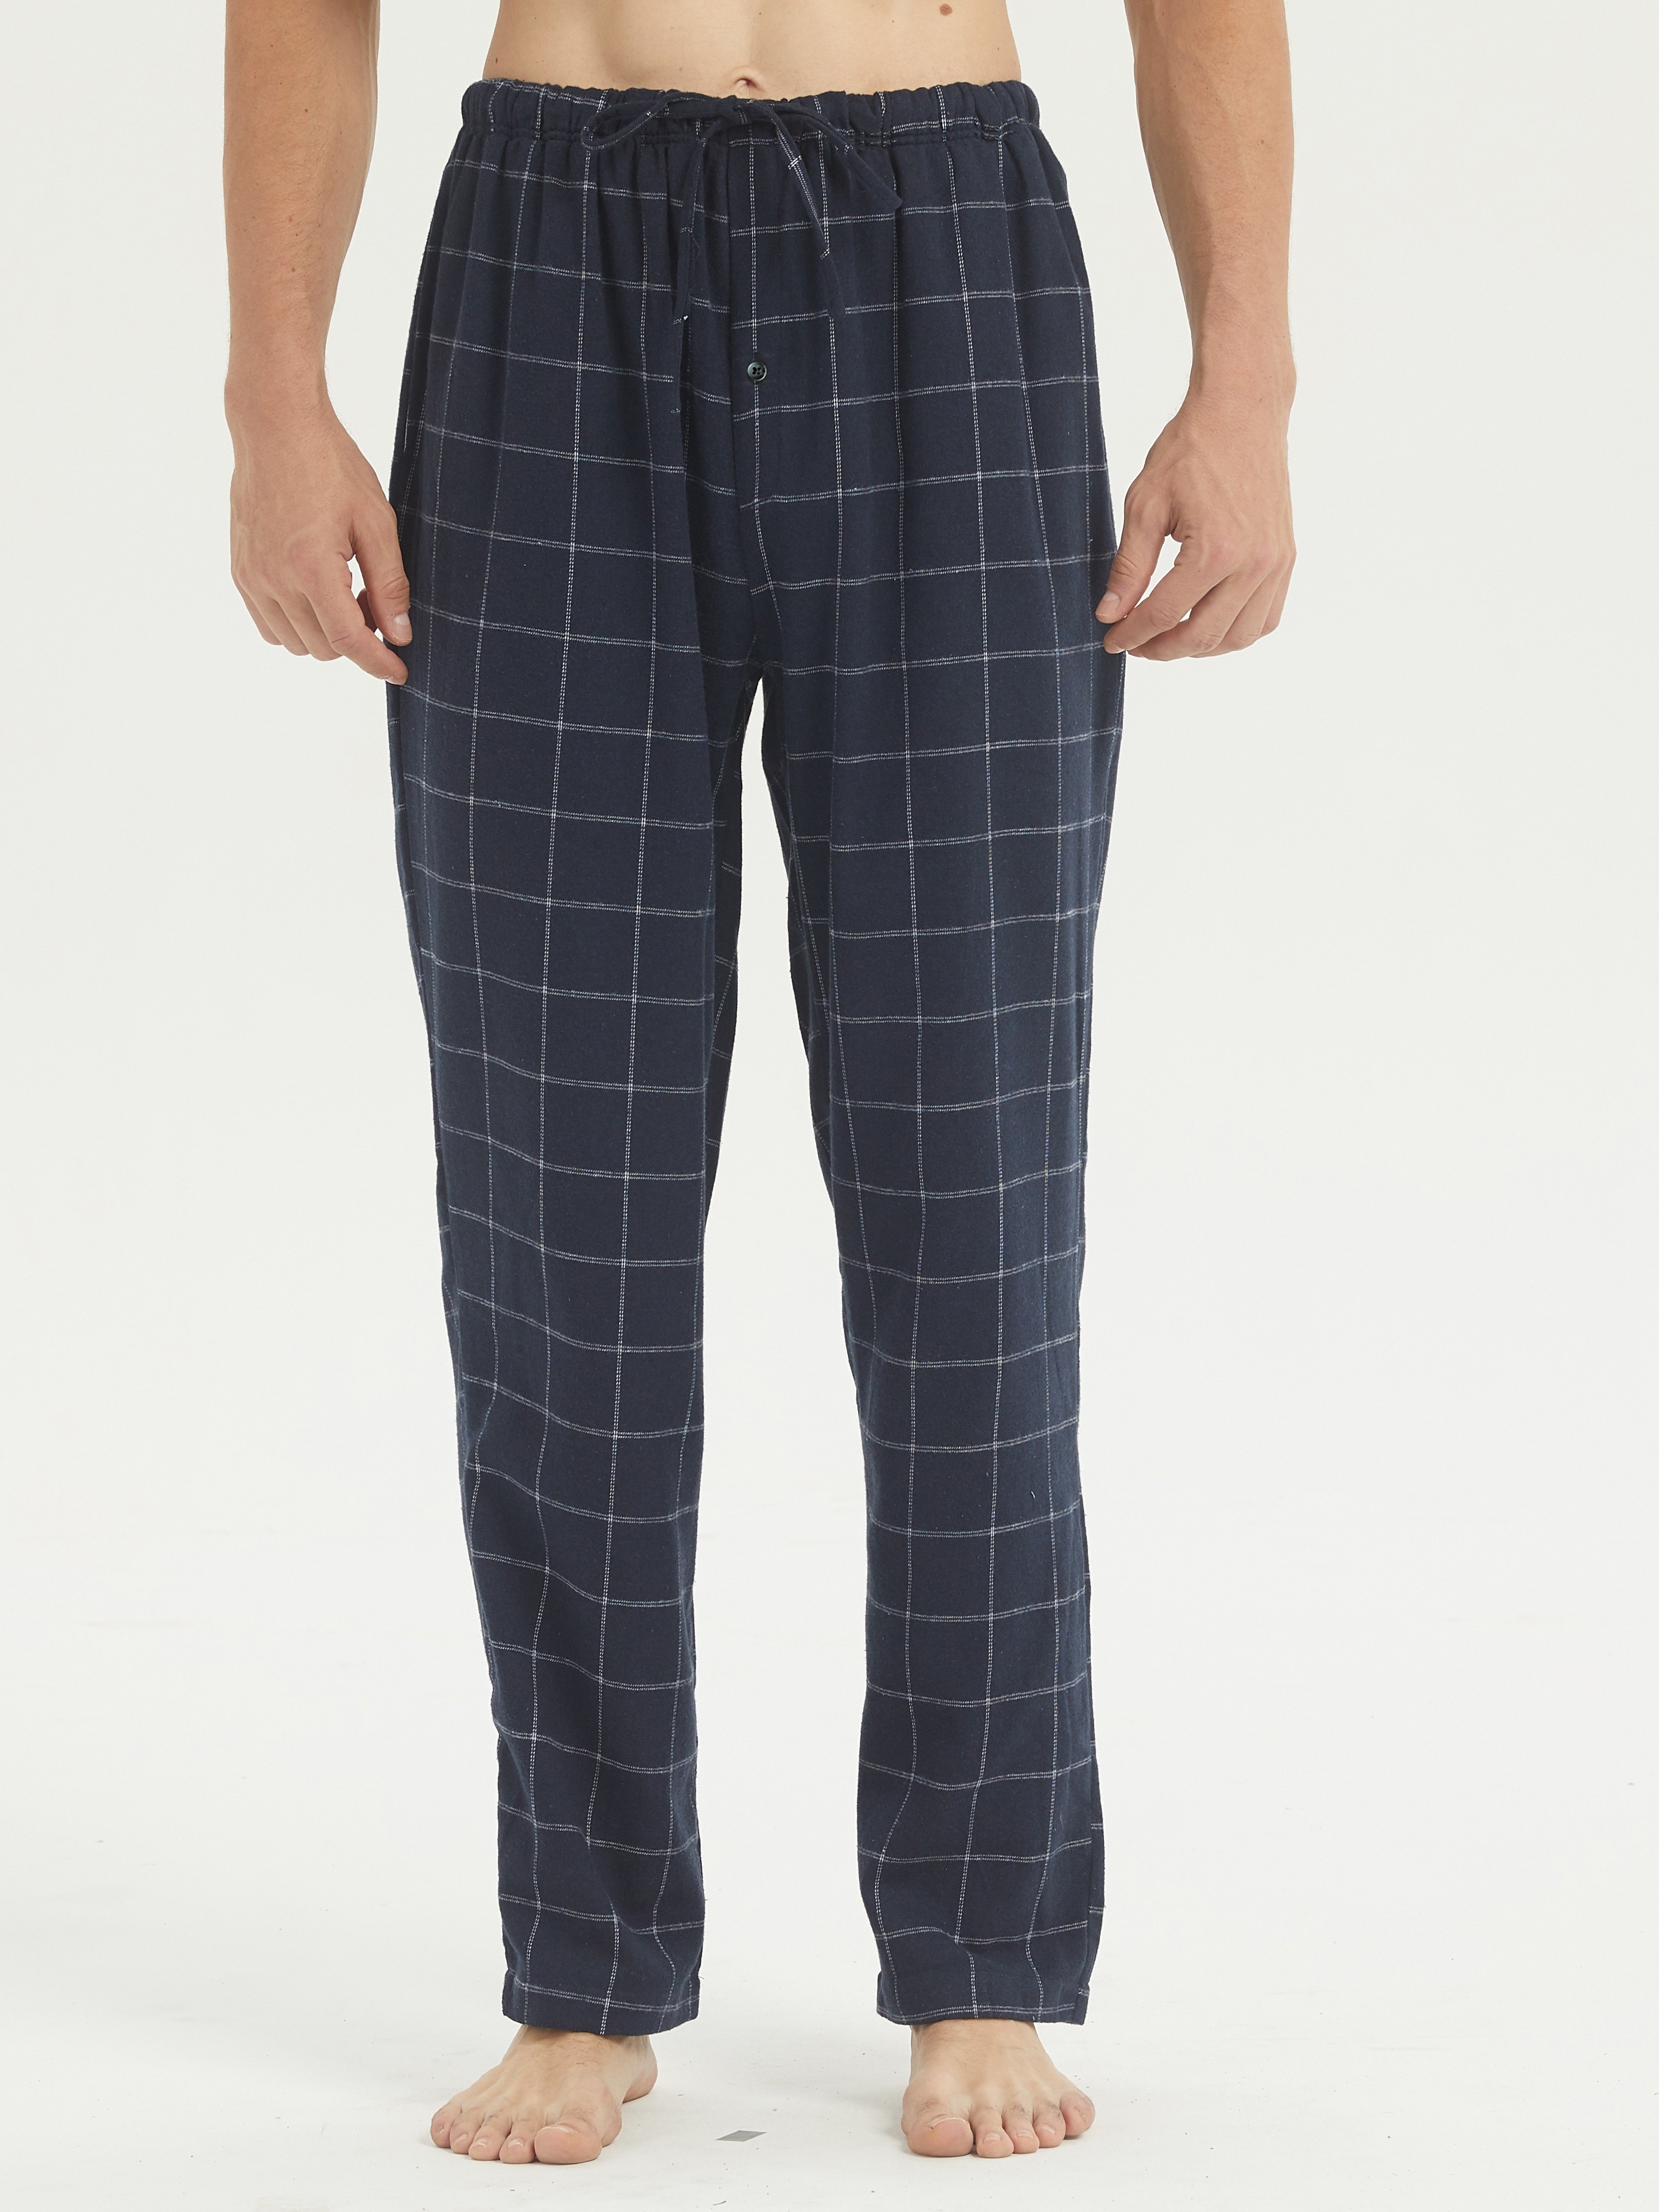 Men's Flannel Pajamas Pants Set Cotton Plaid Pjs Bottoms - Temu